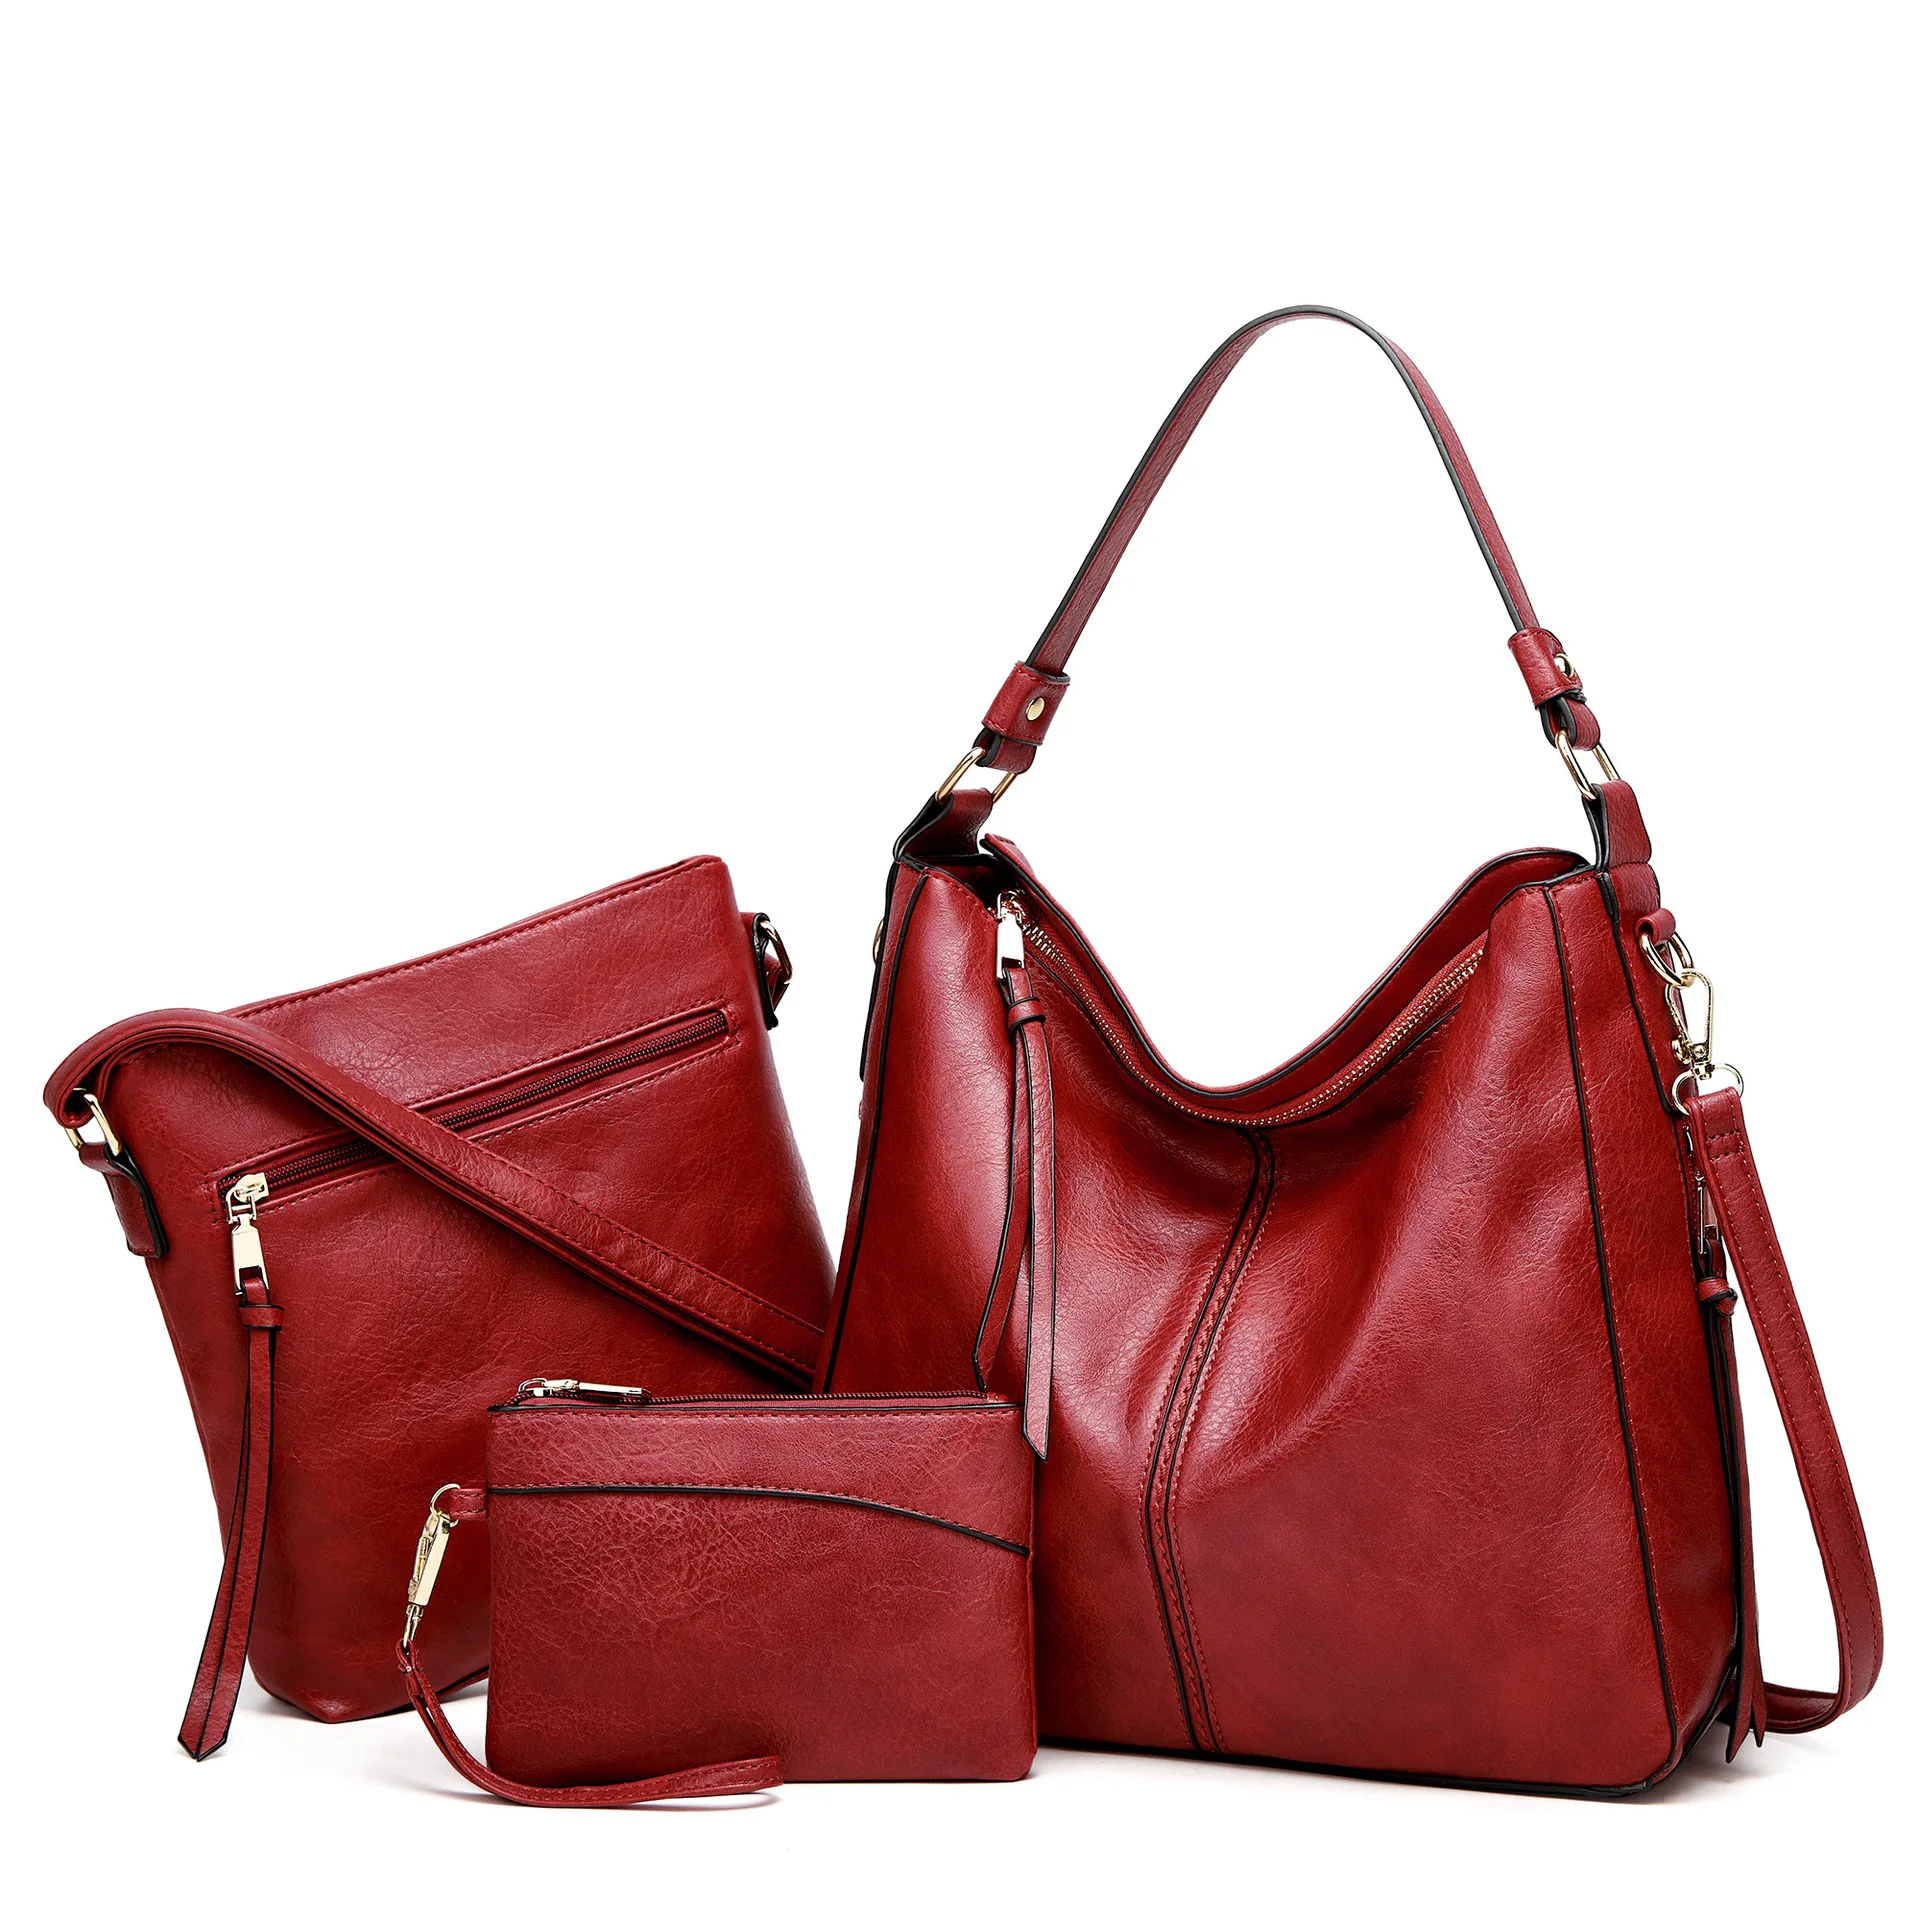 Women 3 Pieces Set Handbag (Brown Strap): Handbags